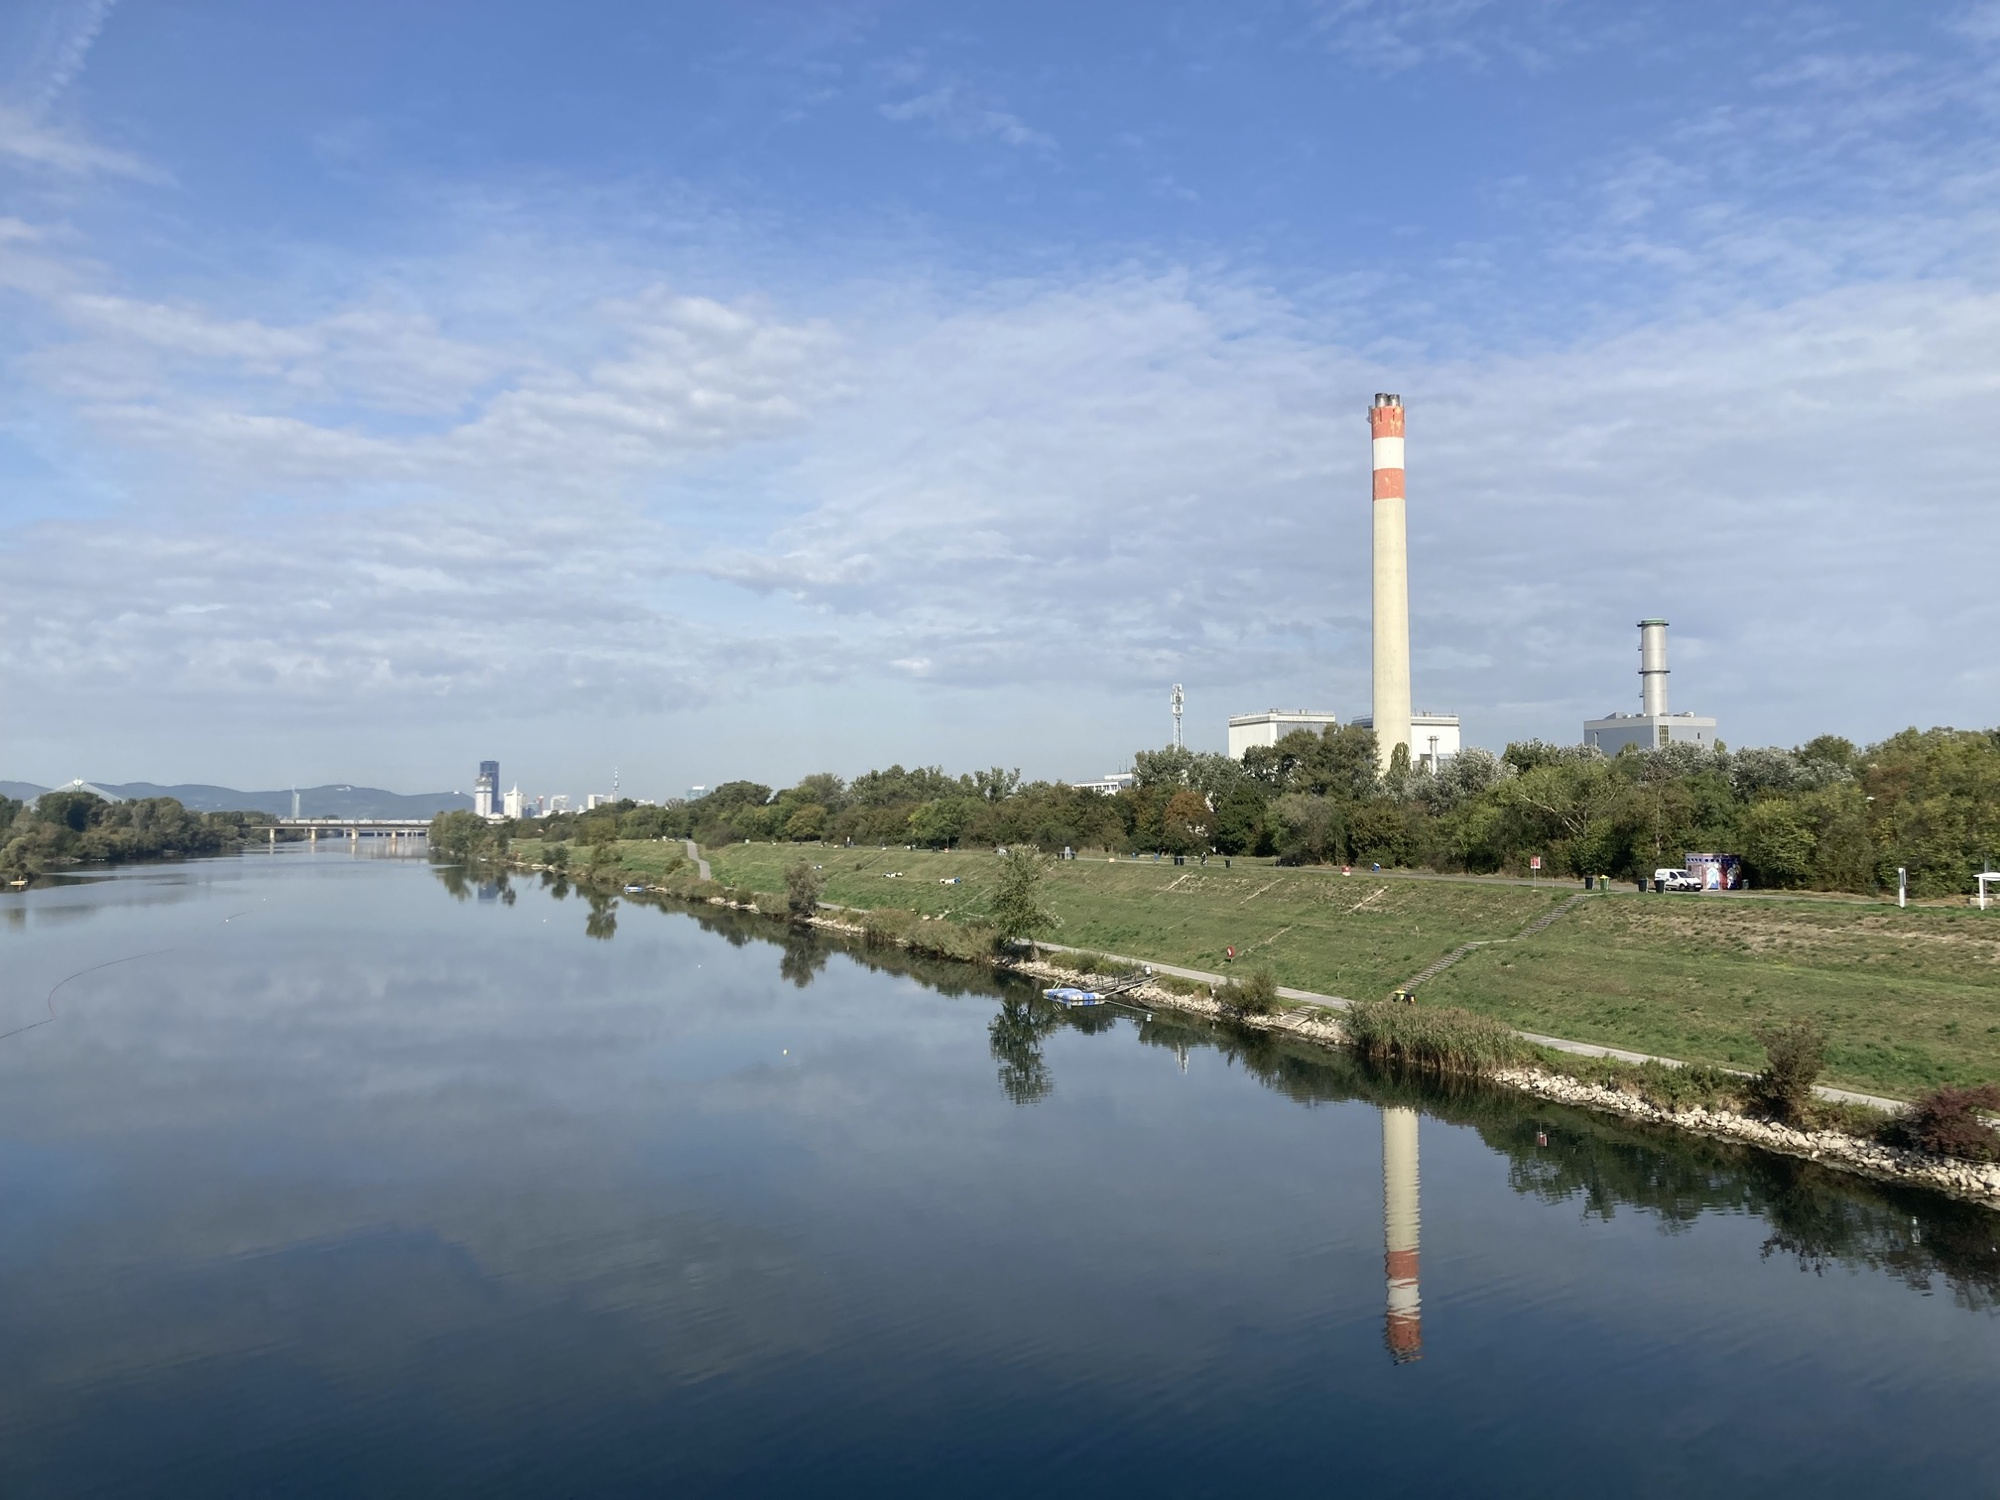 Blick über die Donau, rechts im Bild ein Fabrikschlot, der sich auch im Wasser spiegelt